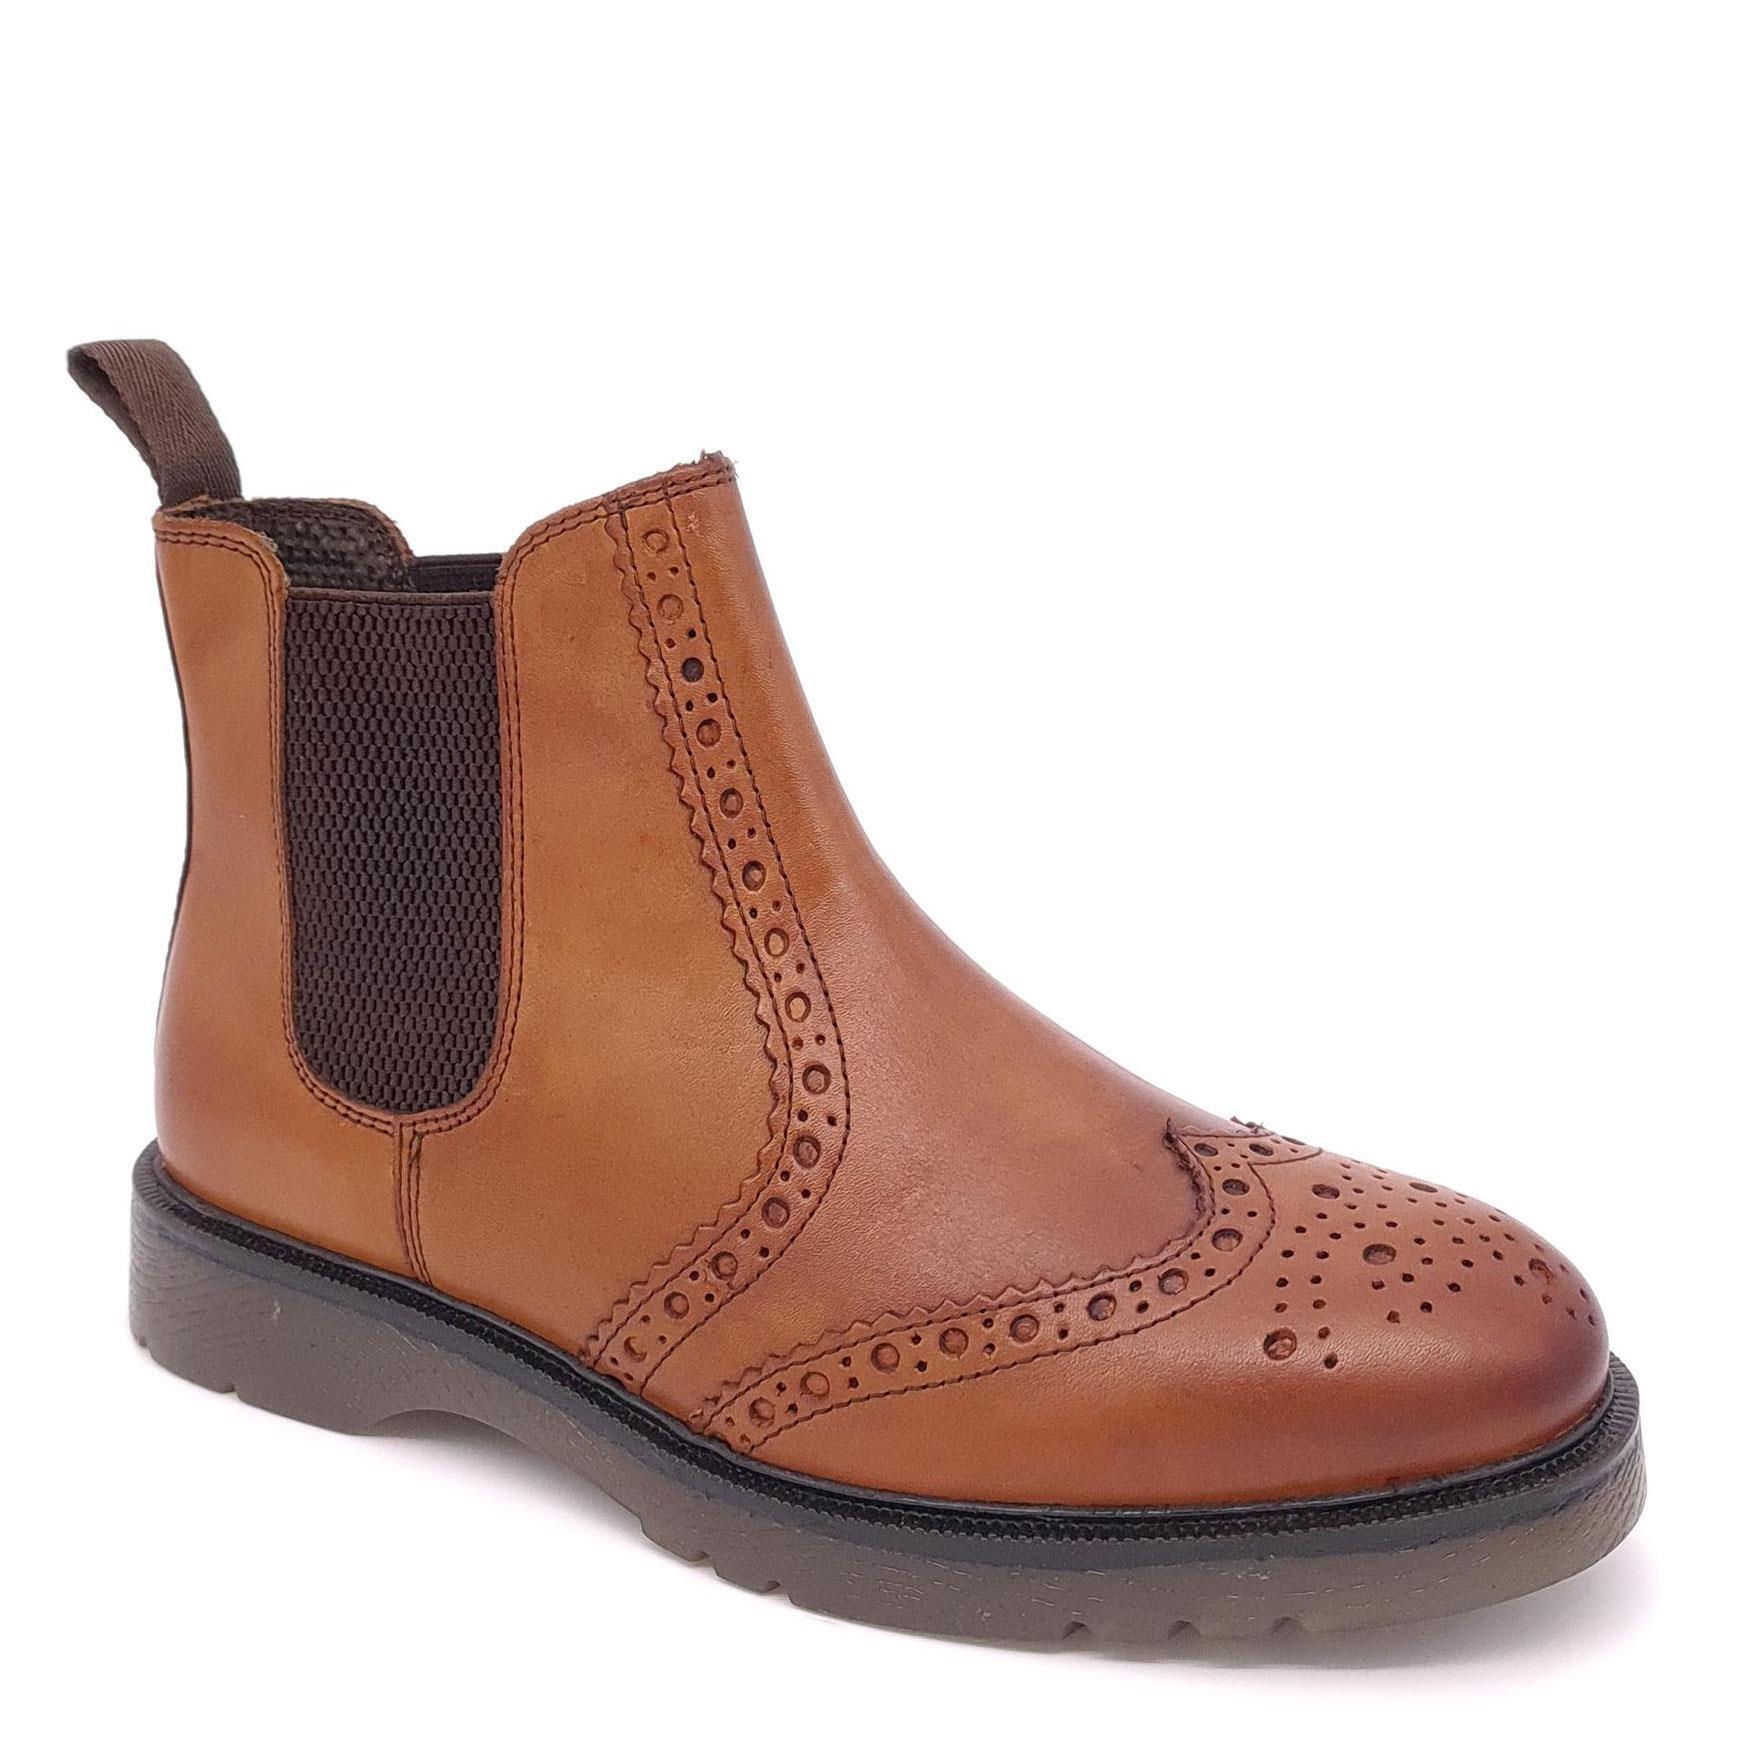 Кожаные ботинки челси с эффектом броги Warkton Frank James, коричневый кожаные броги norbury frank james коричневый